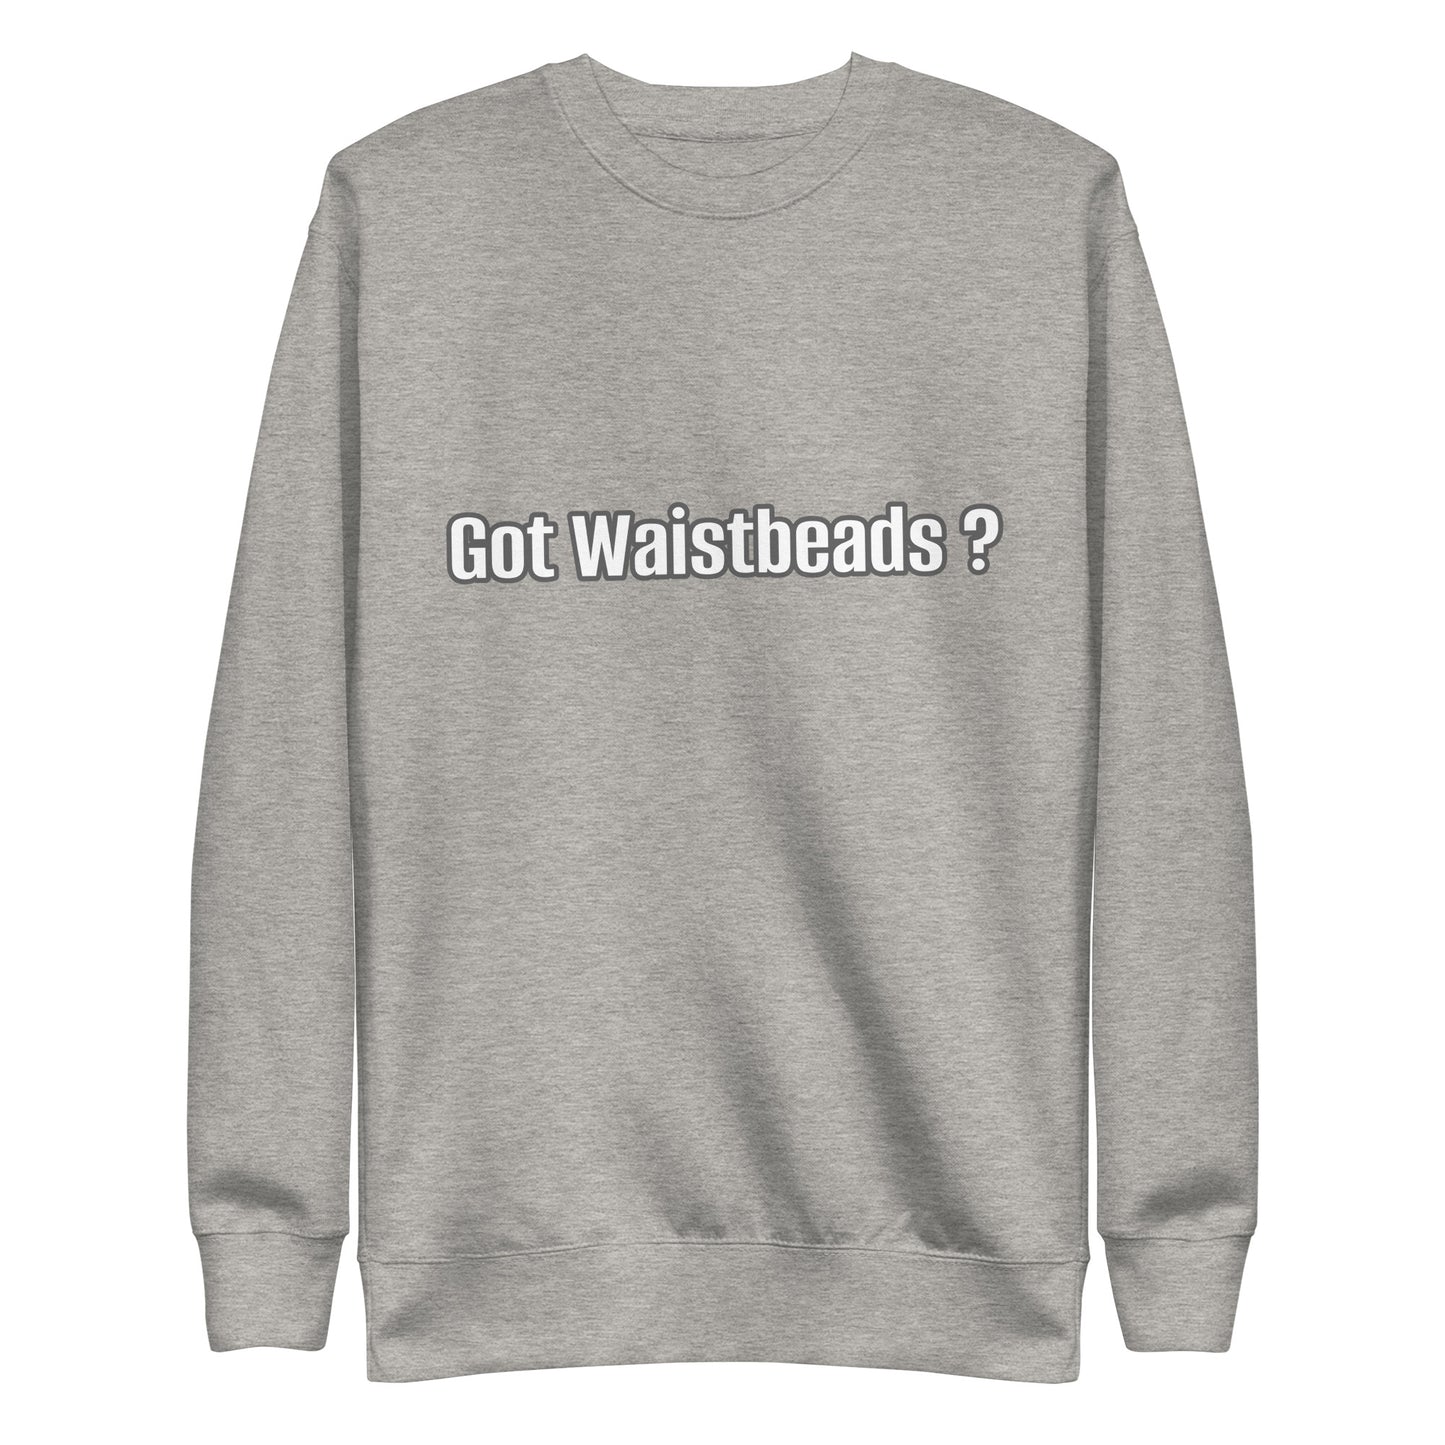 Got Waistbeads ?